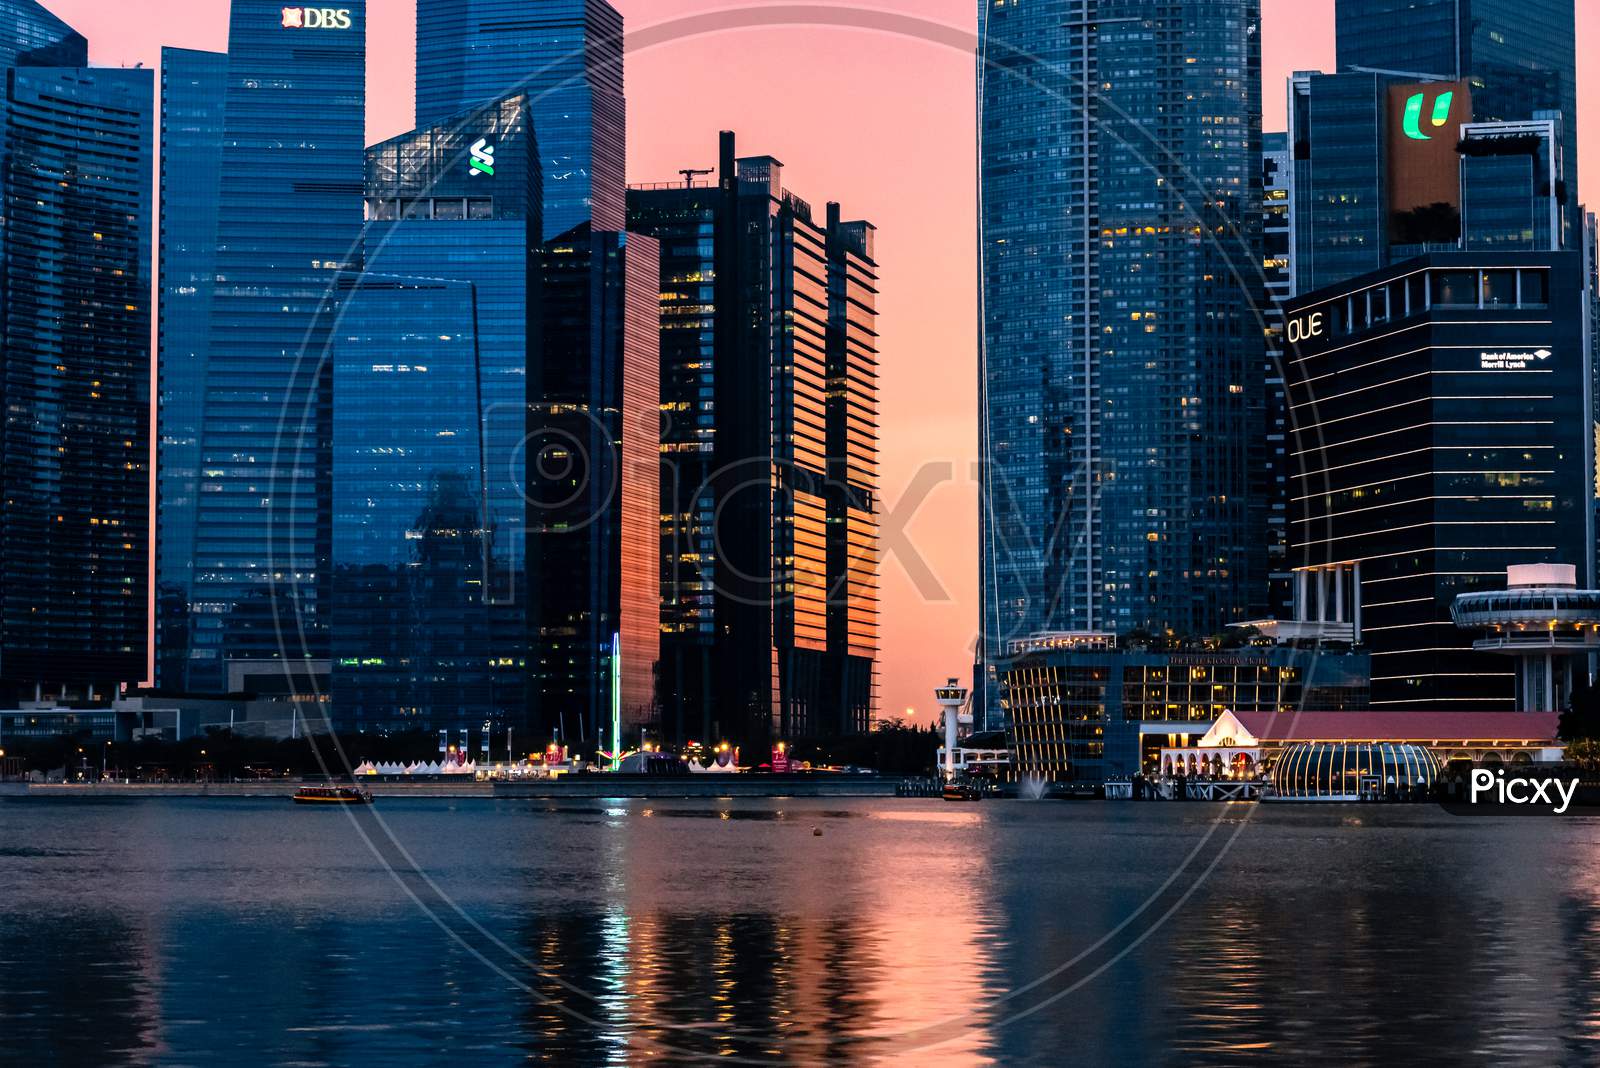 Cityscape, Marine Bay, Singapore 2020.